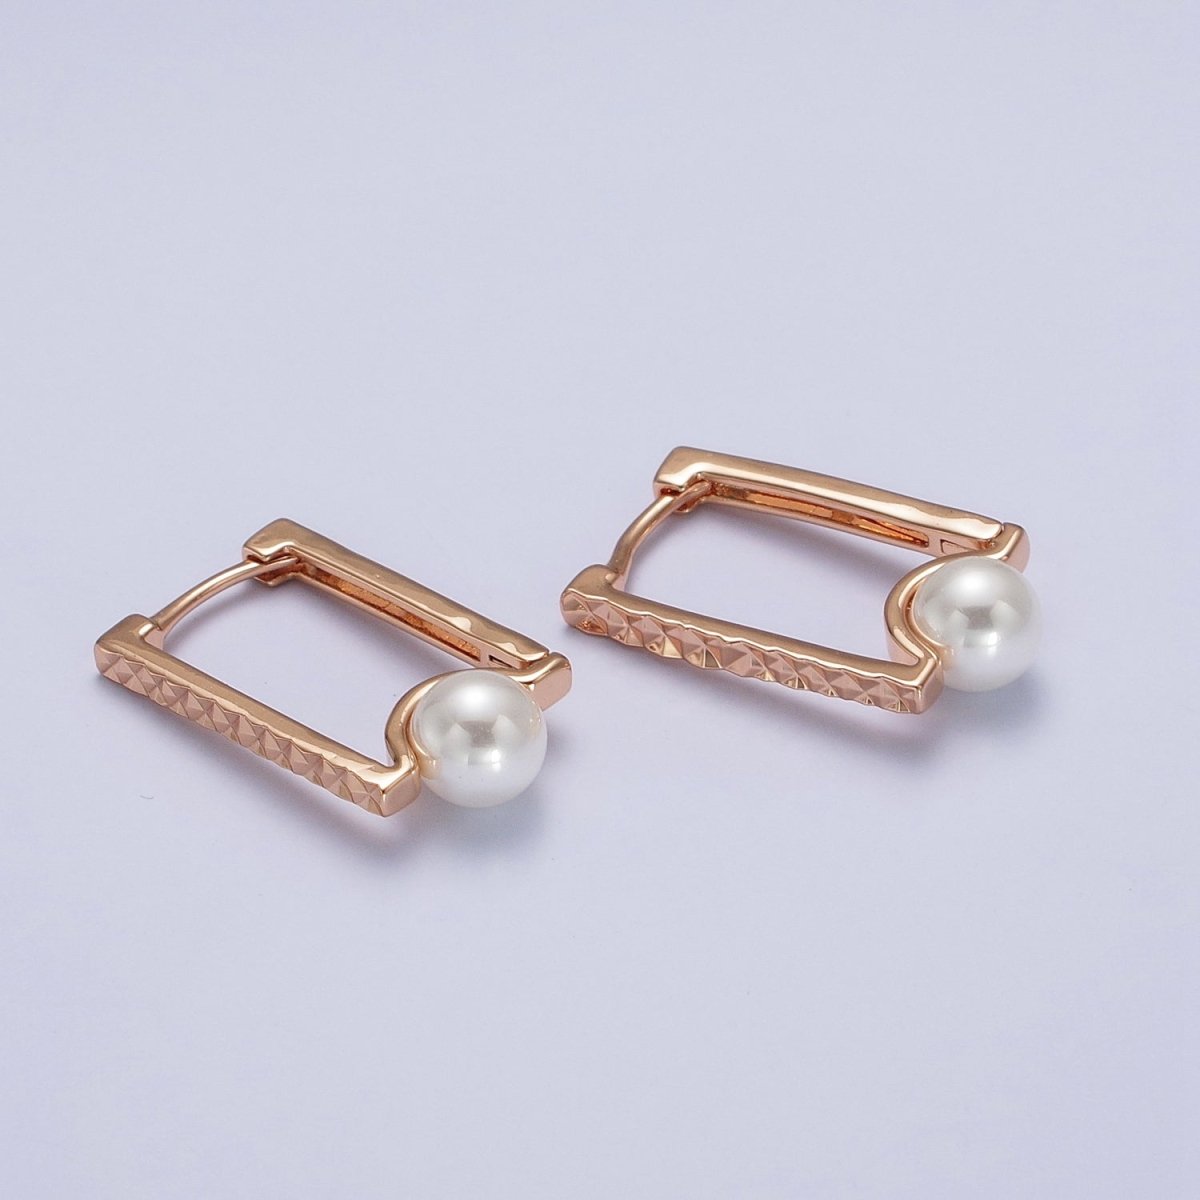 Gold Rectangle Hoop Textured Earrings Diamond Cut Geometric Earrings Pearl Hoop Earrings | AB125 - DLUXCA